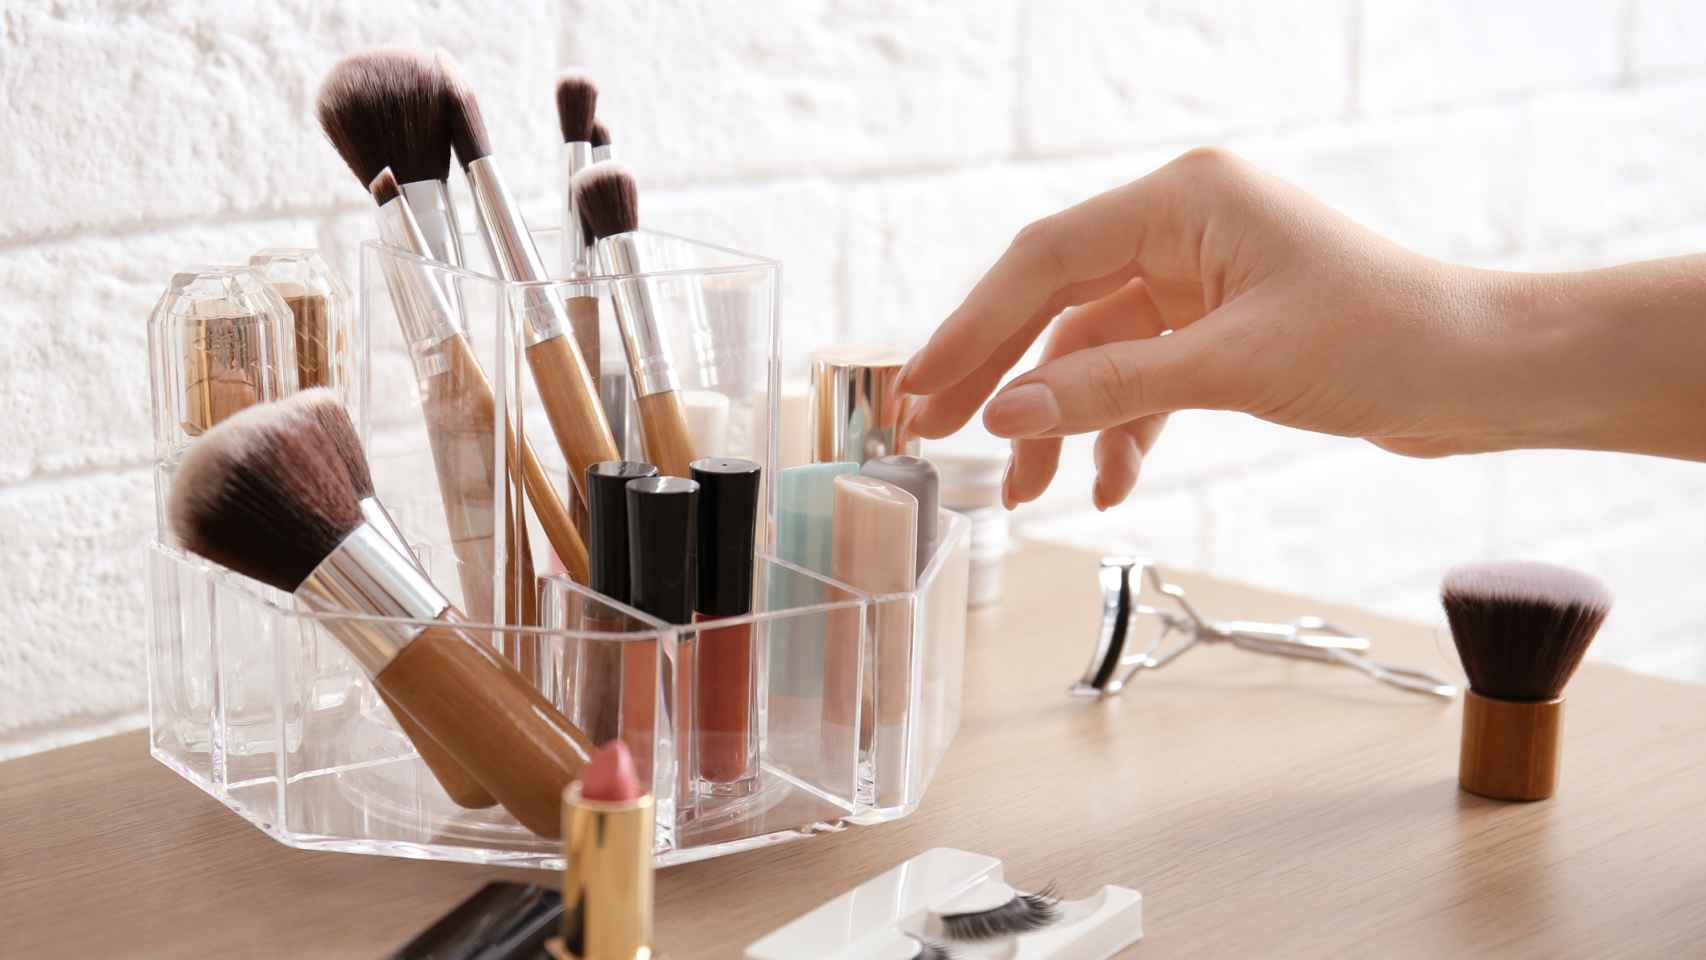 Transparente Organizador Ideal para Maquillaje y Joyas